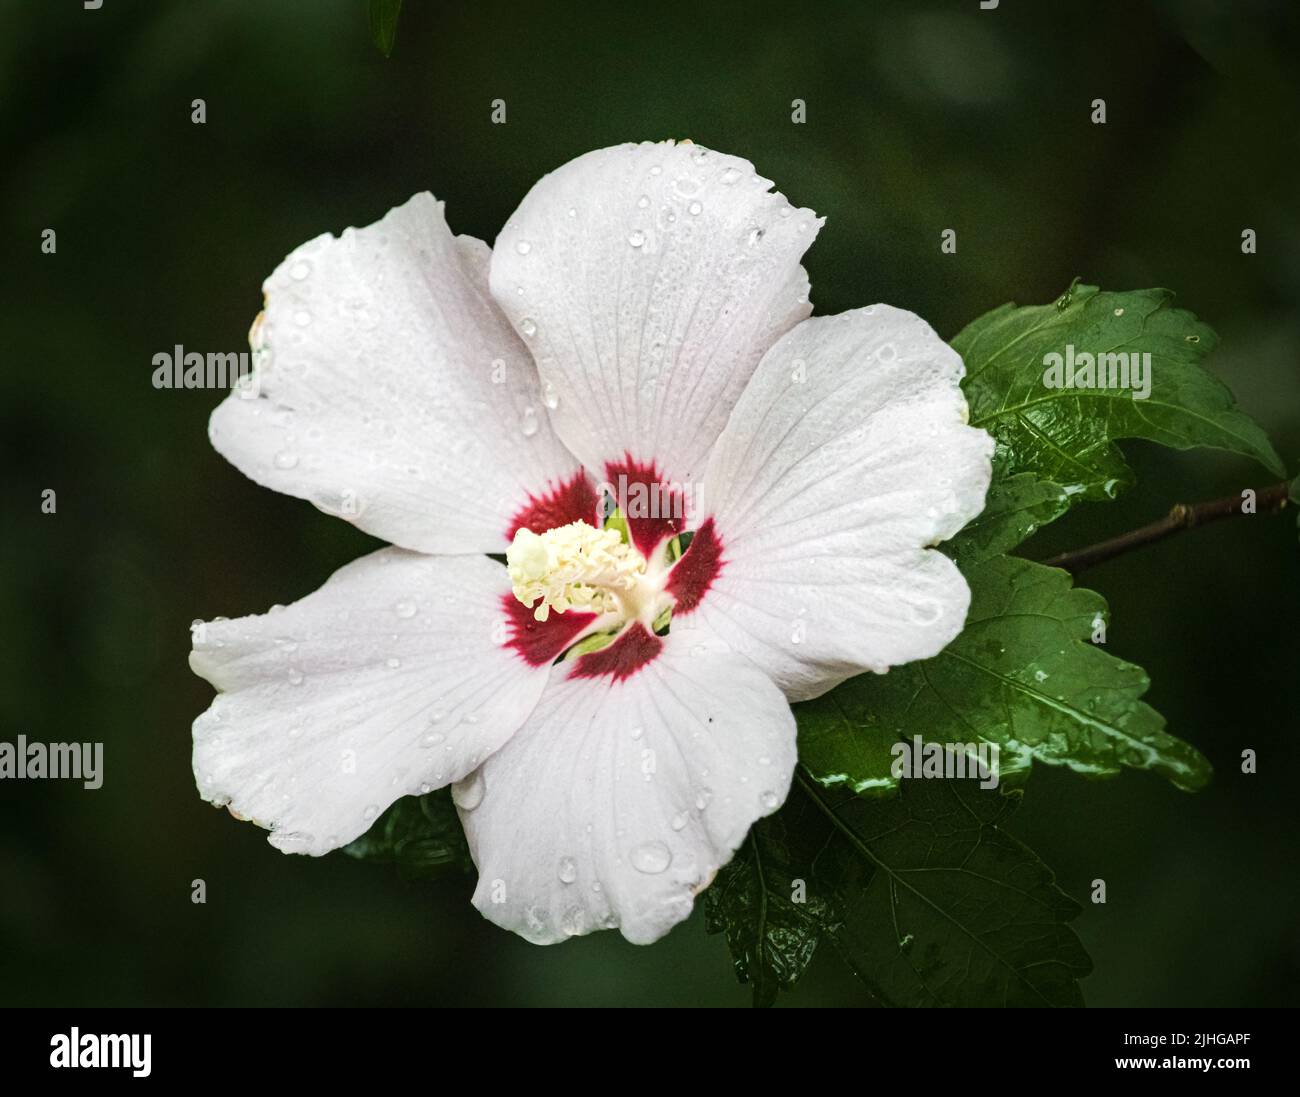 Rosa blanca de las flores de Sharon, Hibiscus syriacus, sobre un fondo verde oscuro y exuberante bajo la luz del sol en verano o otoño, Lancaster, Pennsylvania Foto de stock